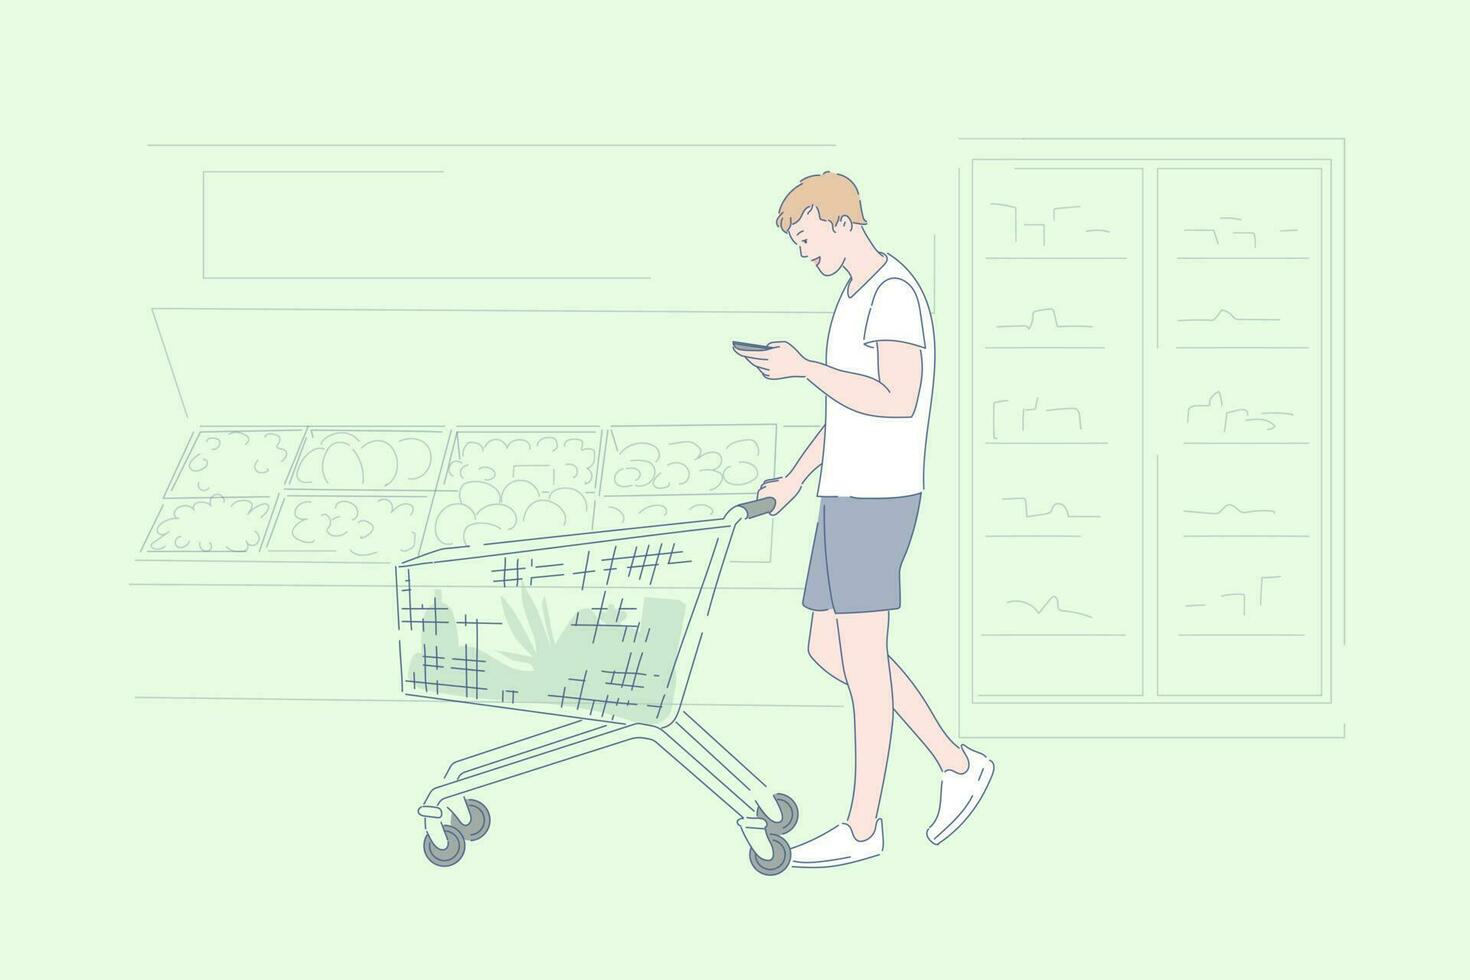 supermercado compras, tienda de comestibles Tienda surtido, producto selección concepto vector